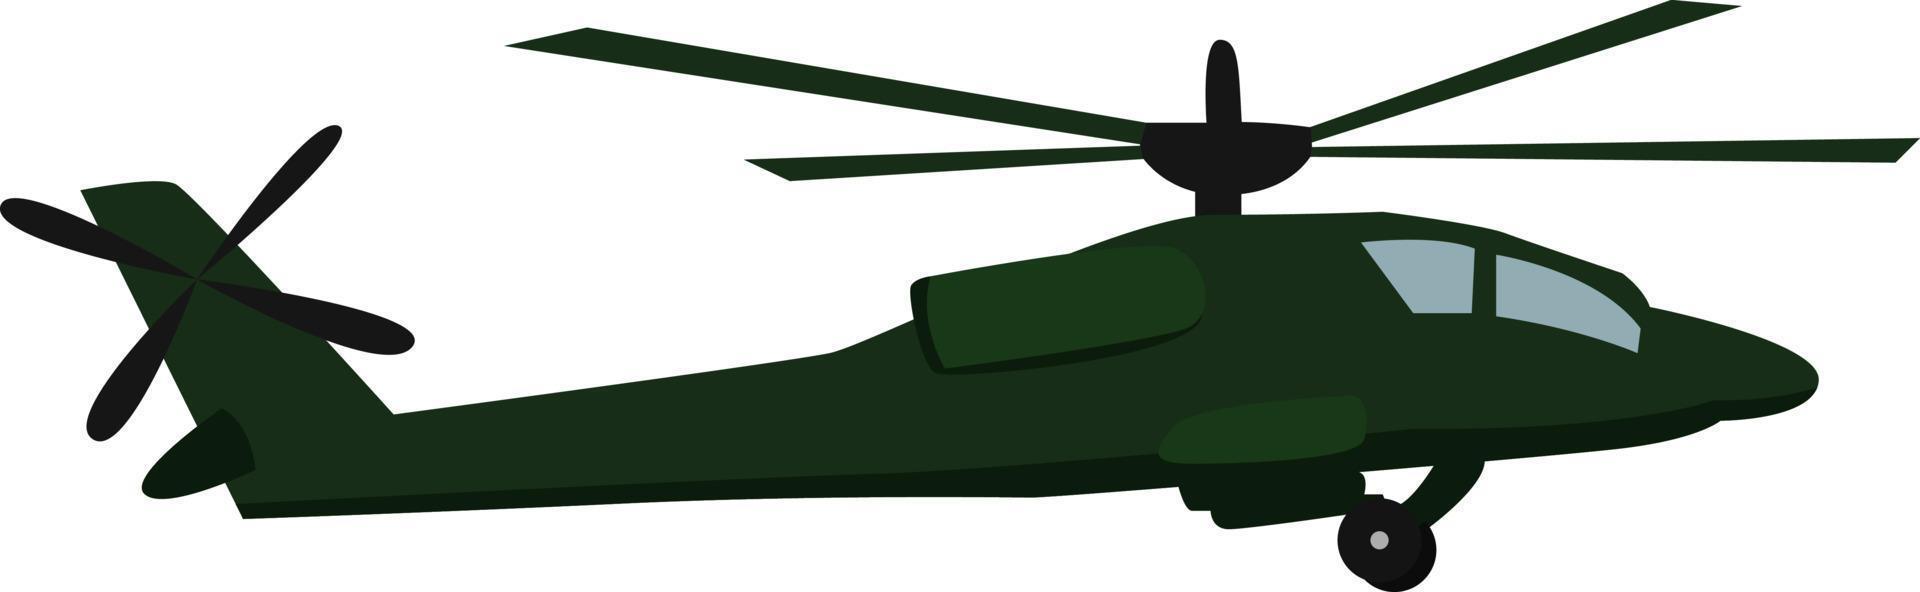 leger helikopter, illustratie, vector Aan wit achtergrond